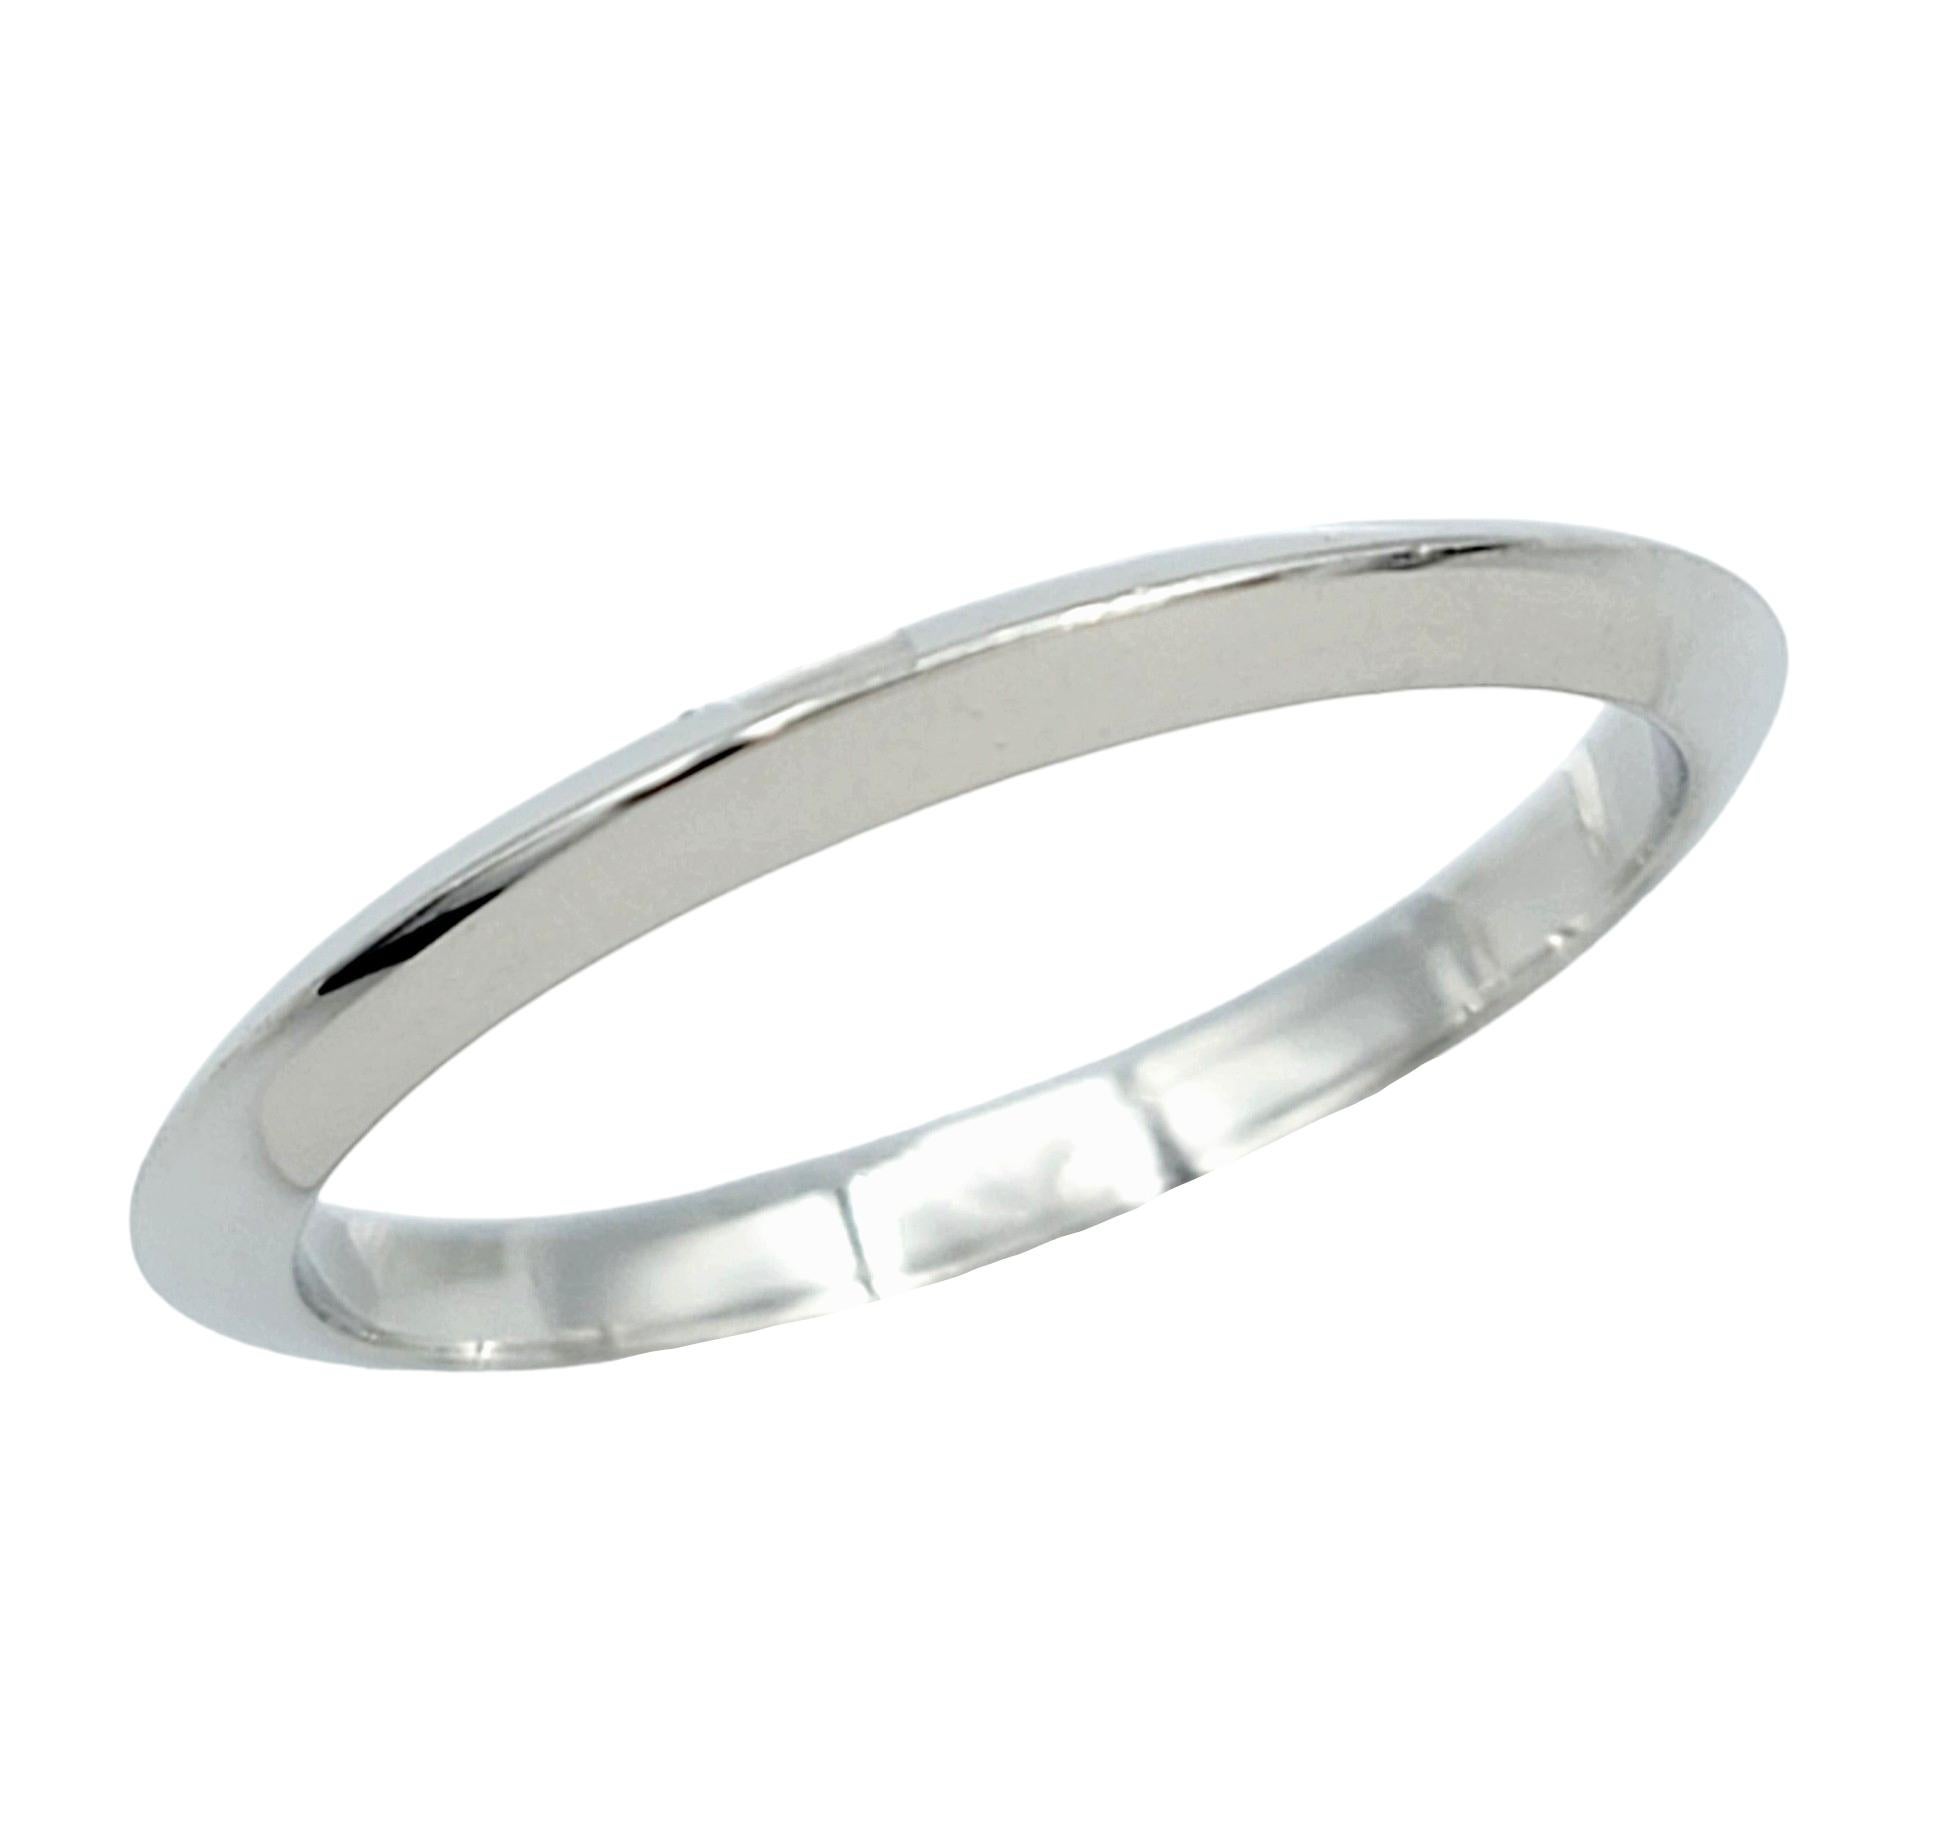 Ringgröße: 6

Eleganz und Schlichtheit treffen in diesem zeitlosen Ring von Tiffany & Co. aufeinander, der aus luxuriösem Platin gefertigt ist. Die Breite des Rings von 2 mm sorgt für eine zarte Präsenz am Finger, während die Hochglanzpolitur den